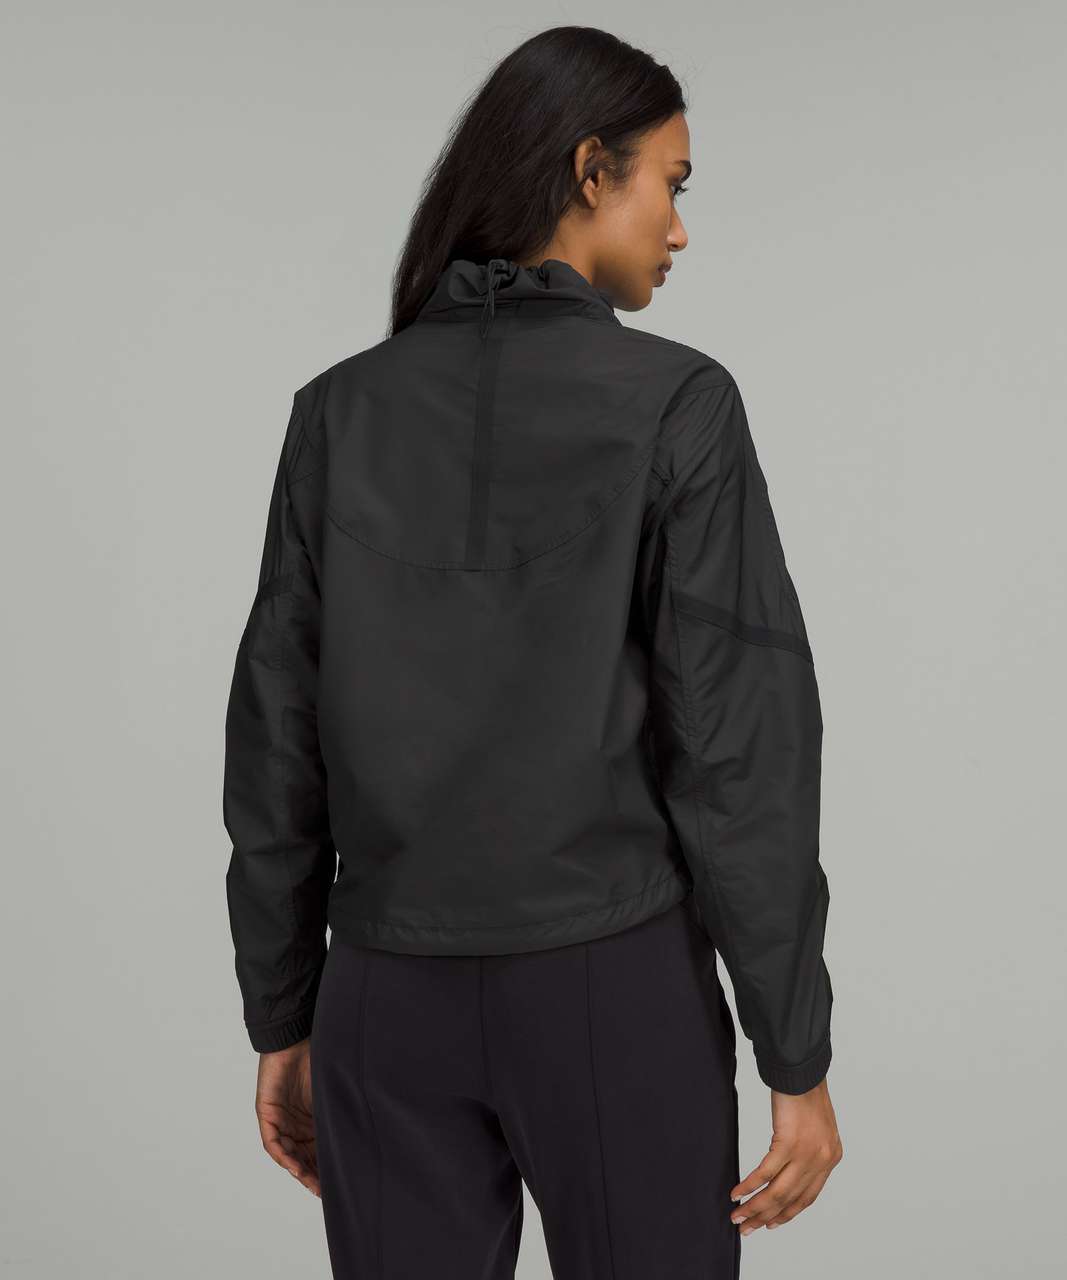 Lululemon Athletica Black Track Jacket Size 6 - 50% off